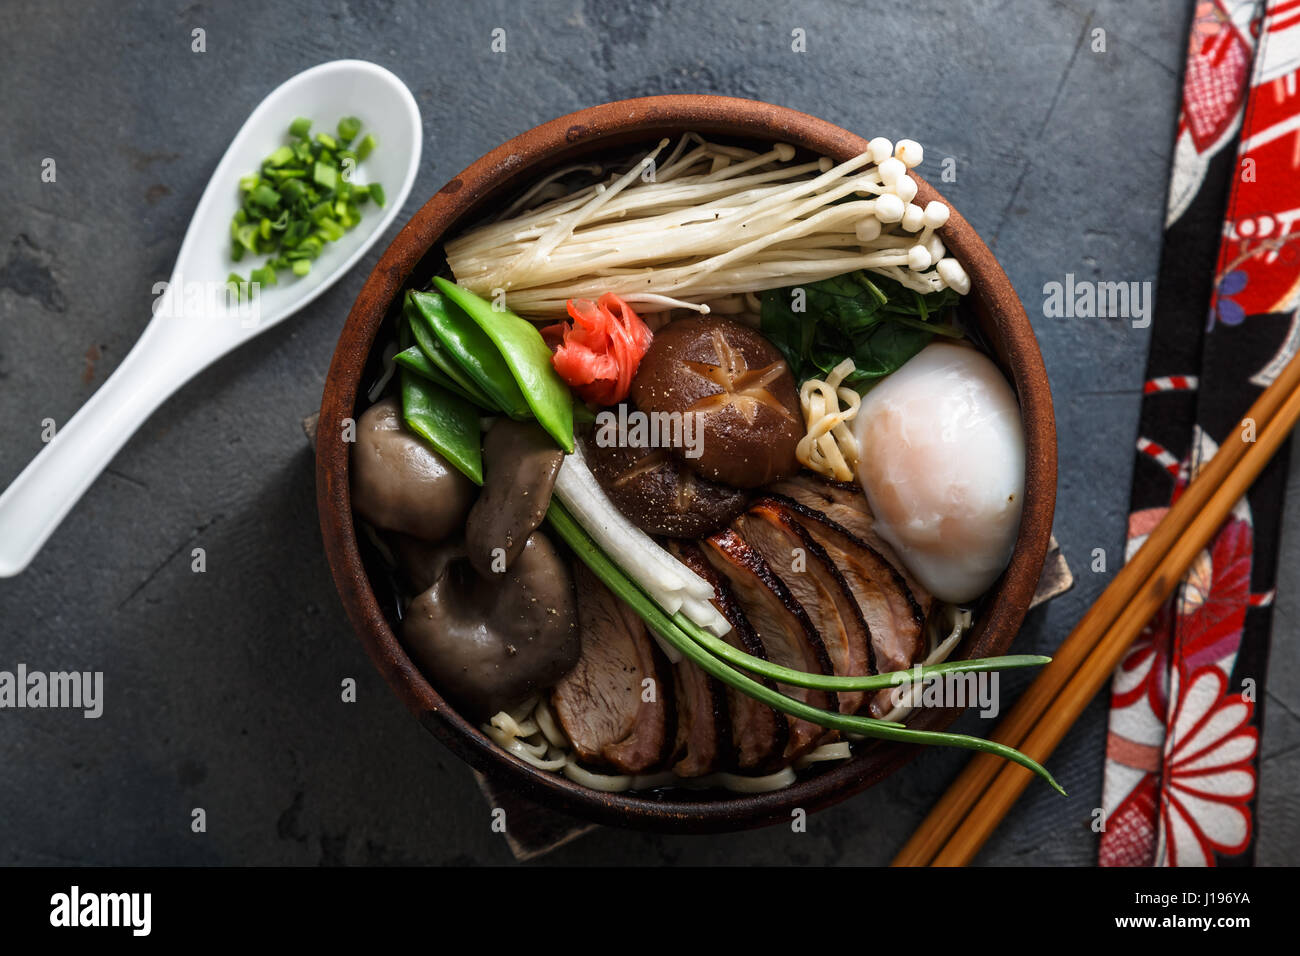 Setas orientales mixtos salteados con fideos y sopa de cebolla Foto de stock